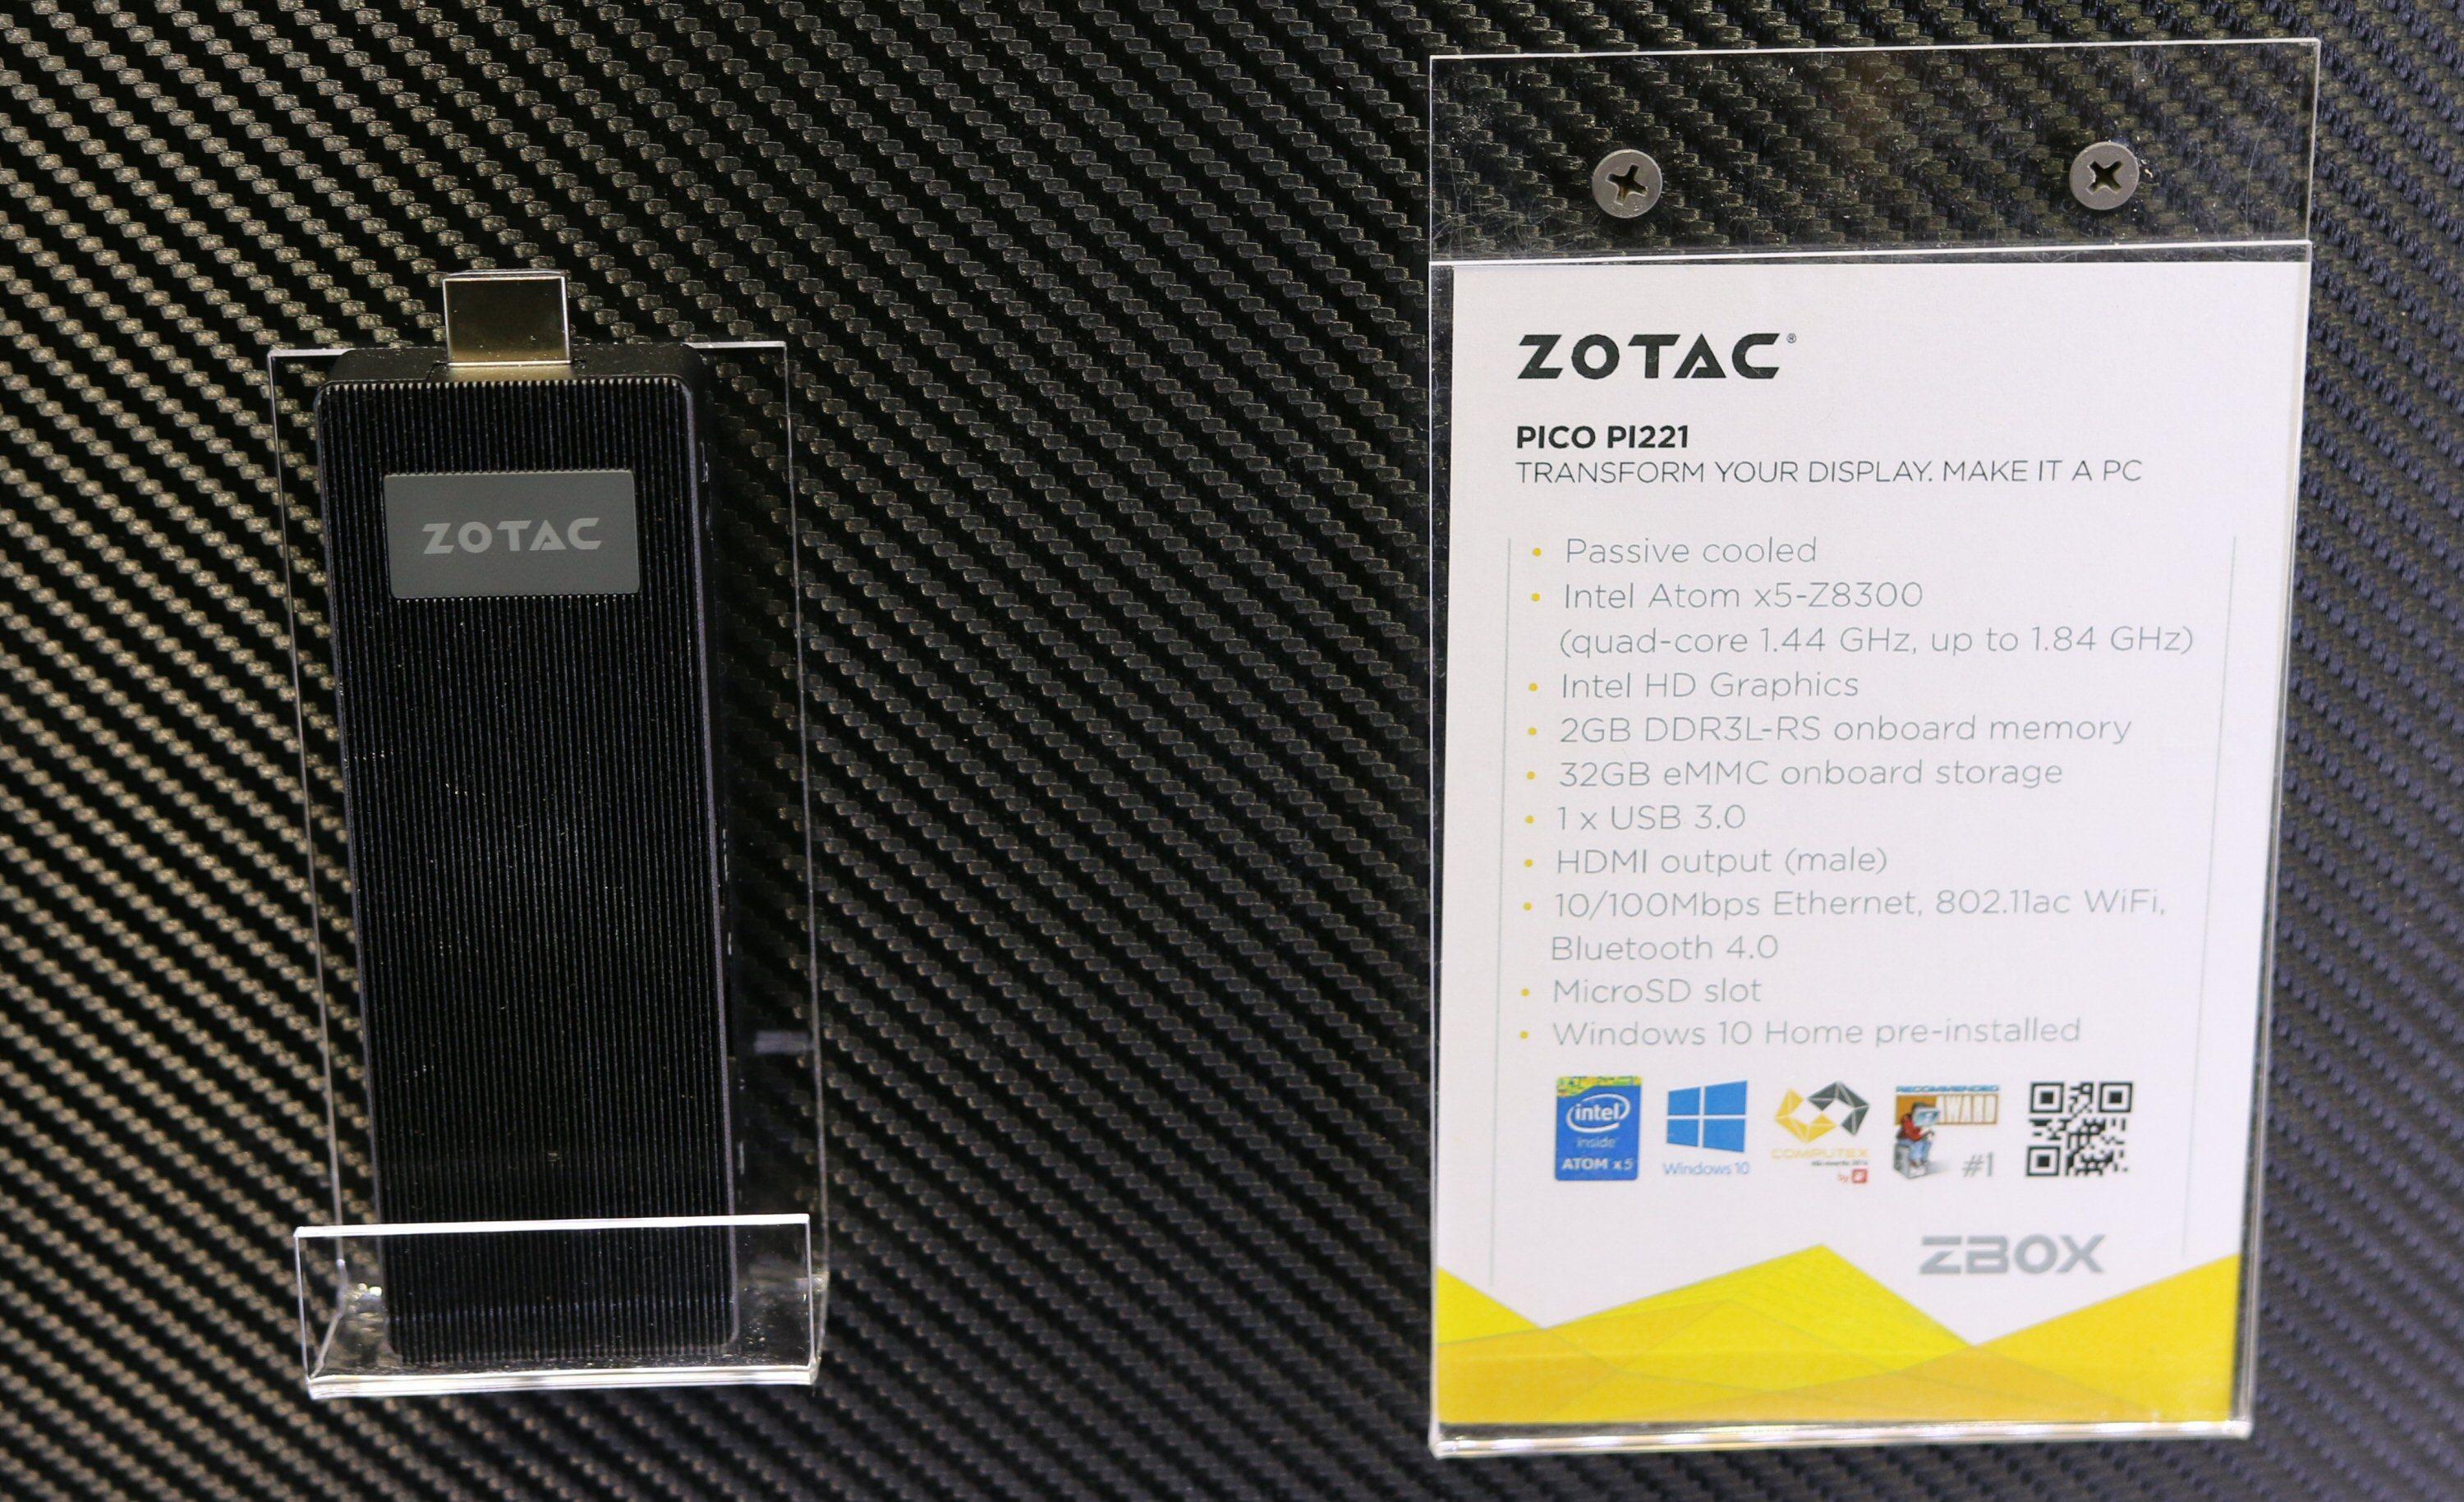 Pinne-PC-en Zotac Zbox pico PI221.